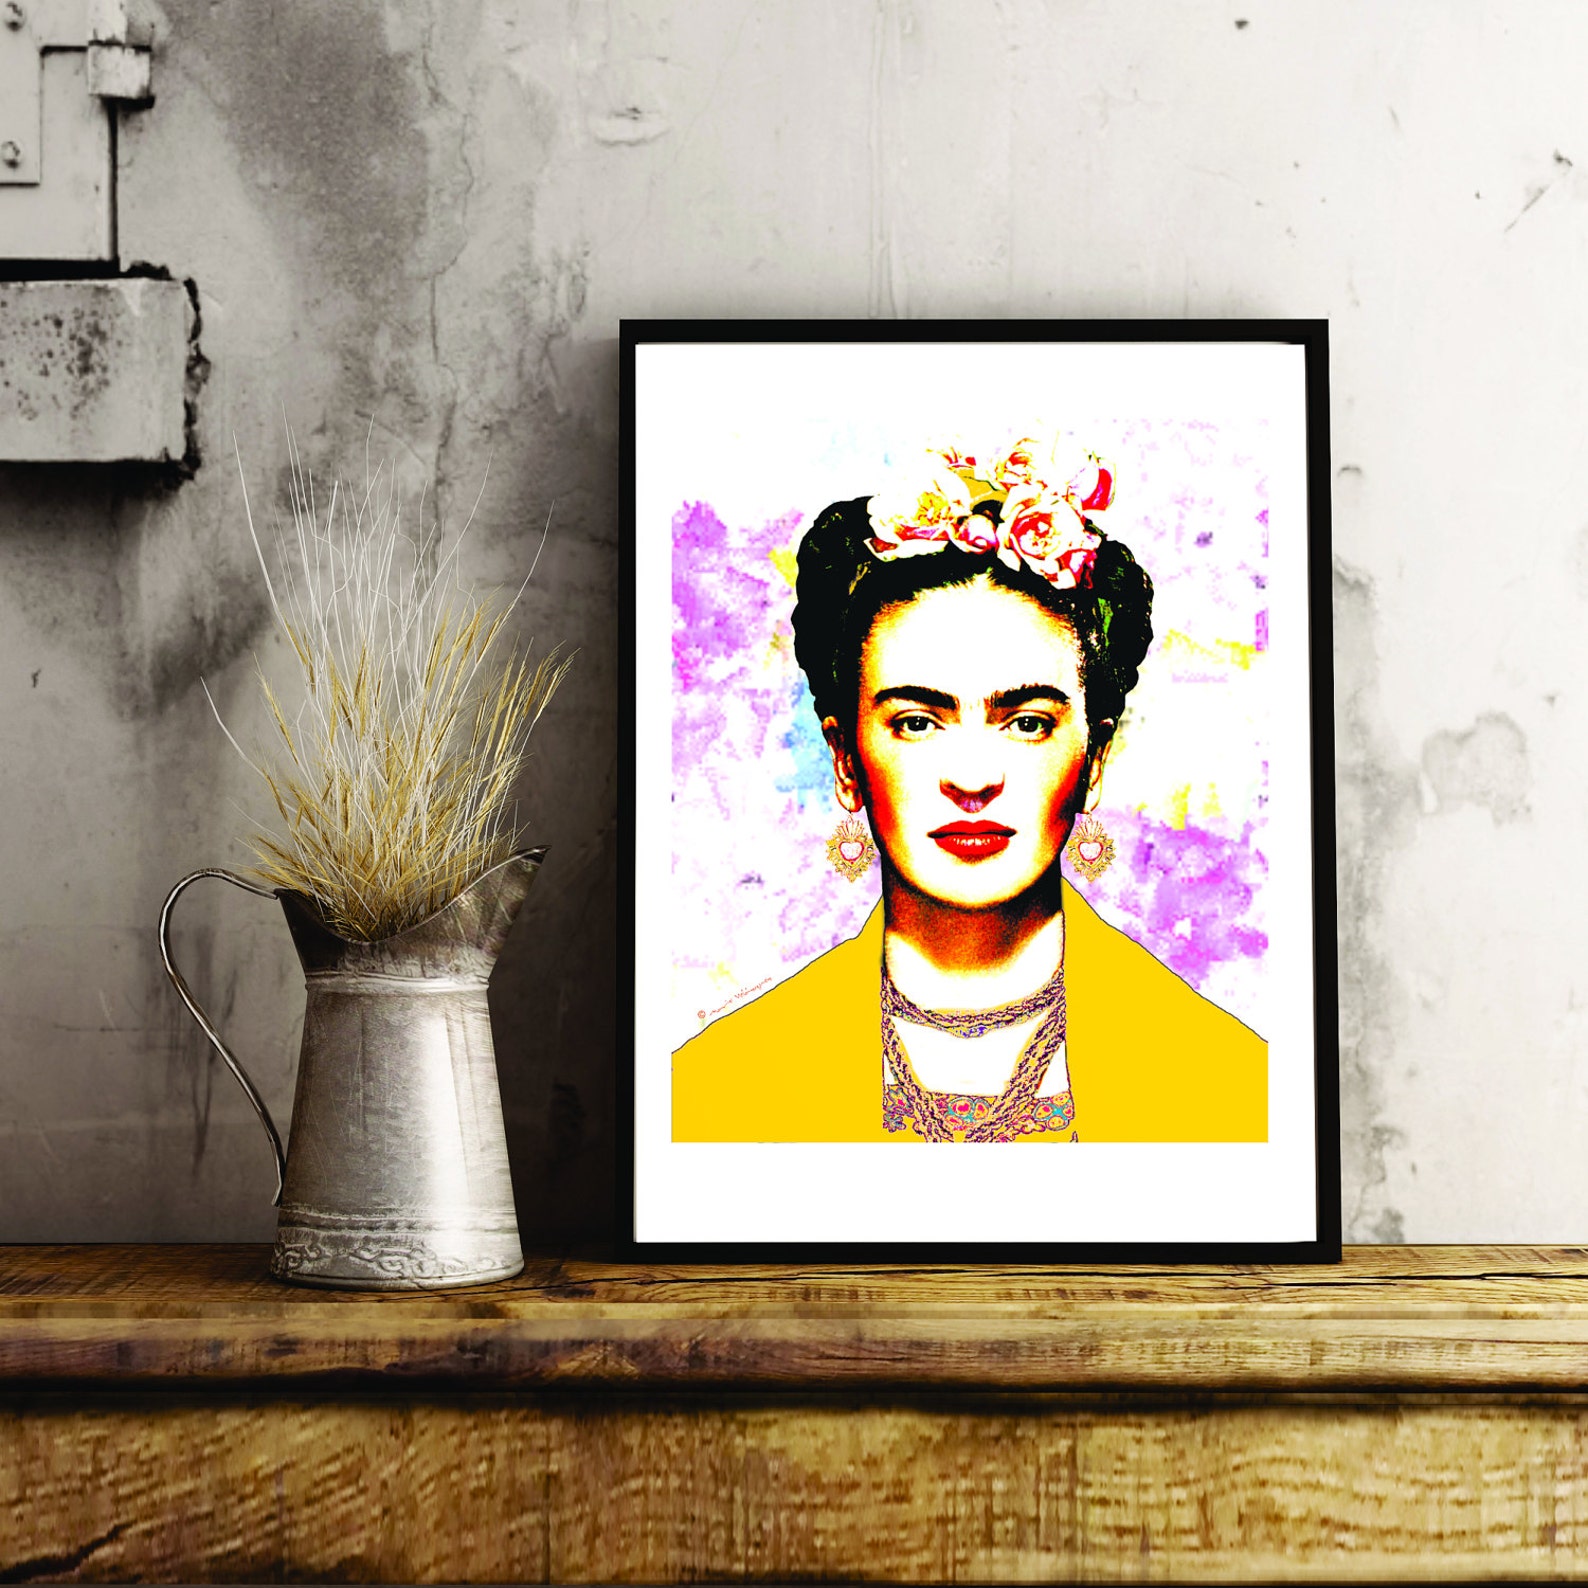 Frida Kahlo With Yellow Rebozo on Brush Strokes Background | Etsy